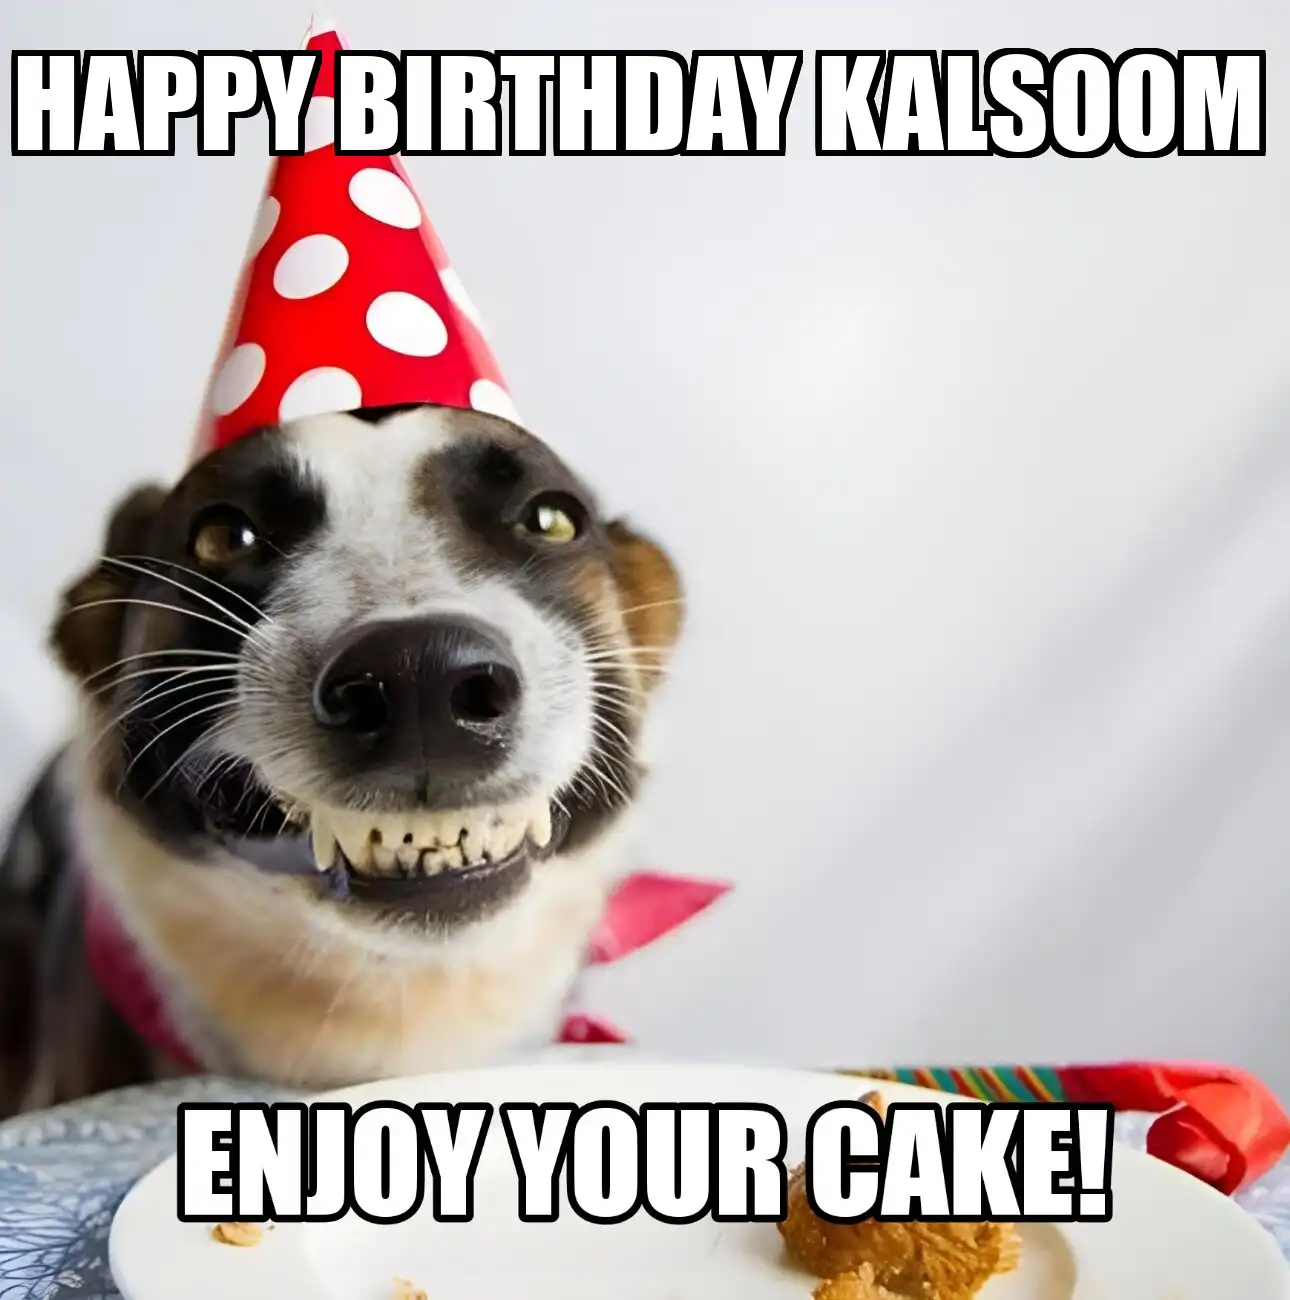 Happy Birthday Kalsoom Enjoy Your Cake Dog Meme